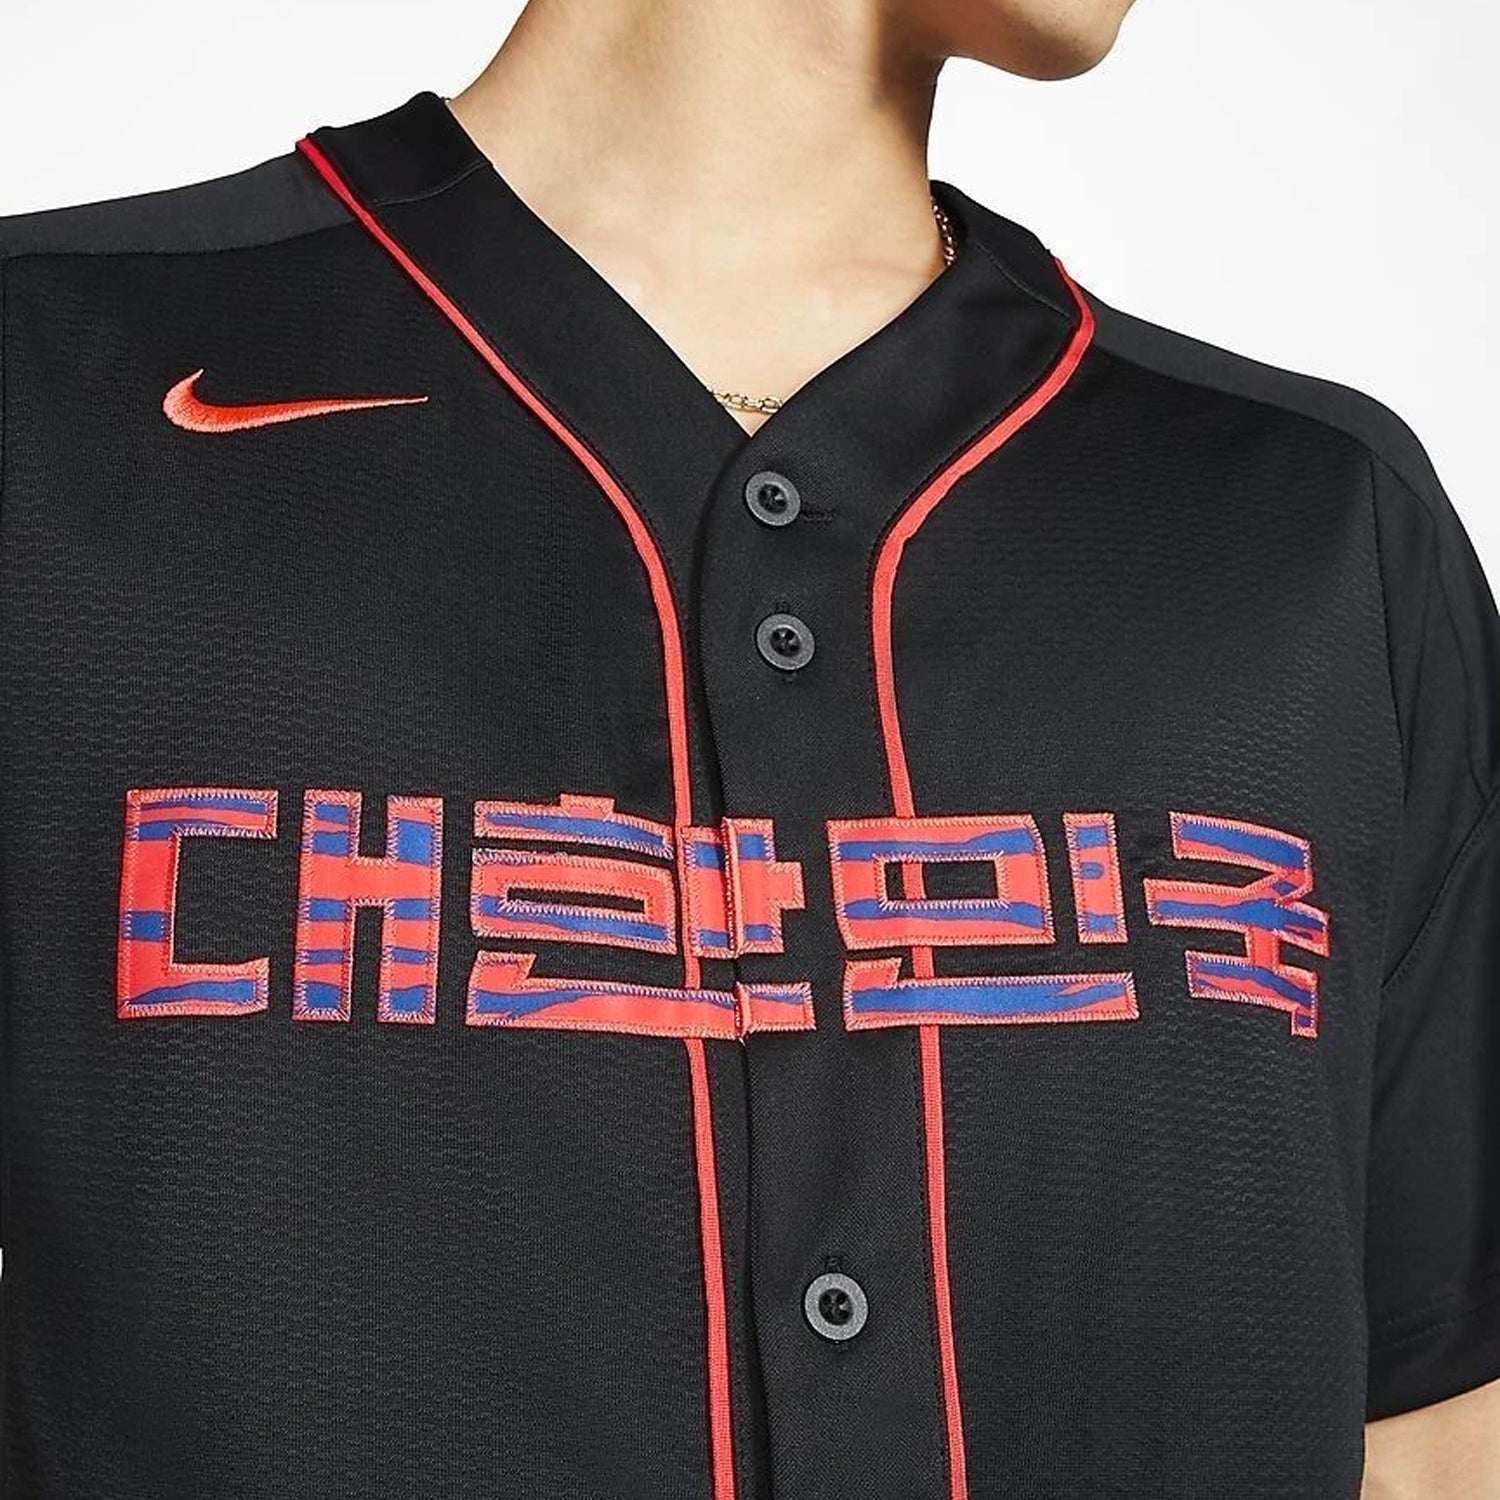 buy korean baseball jerseys